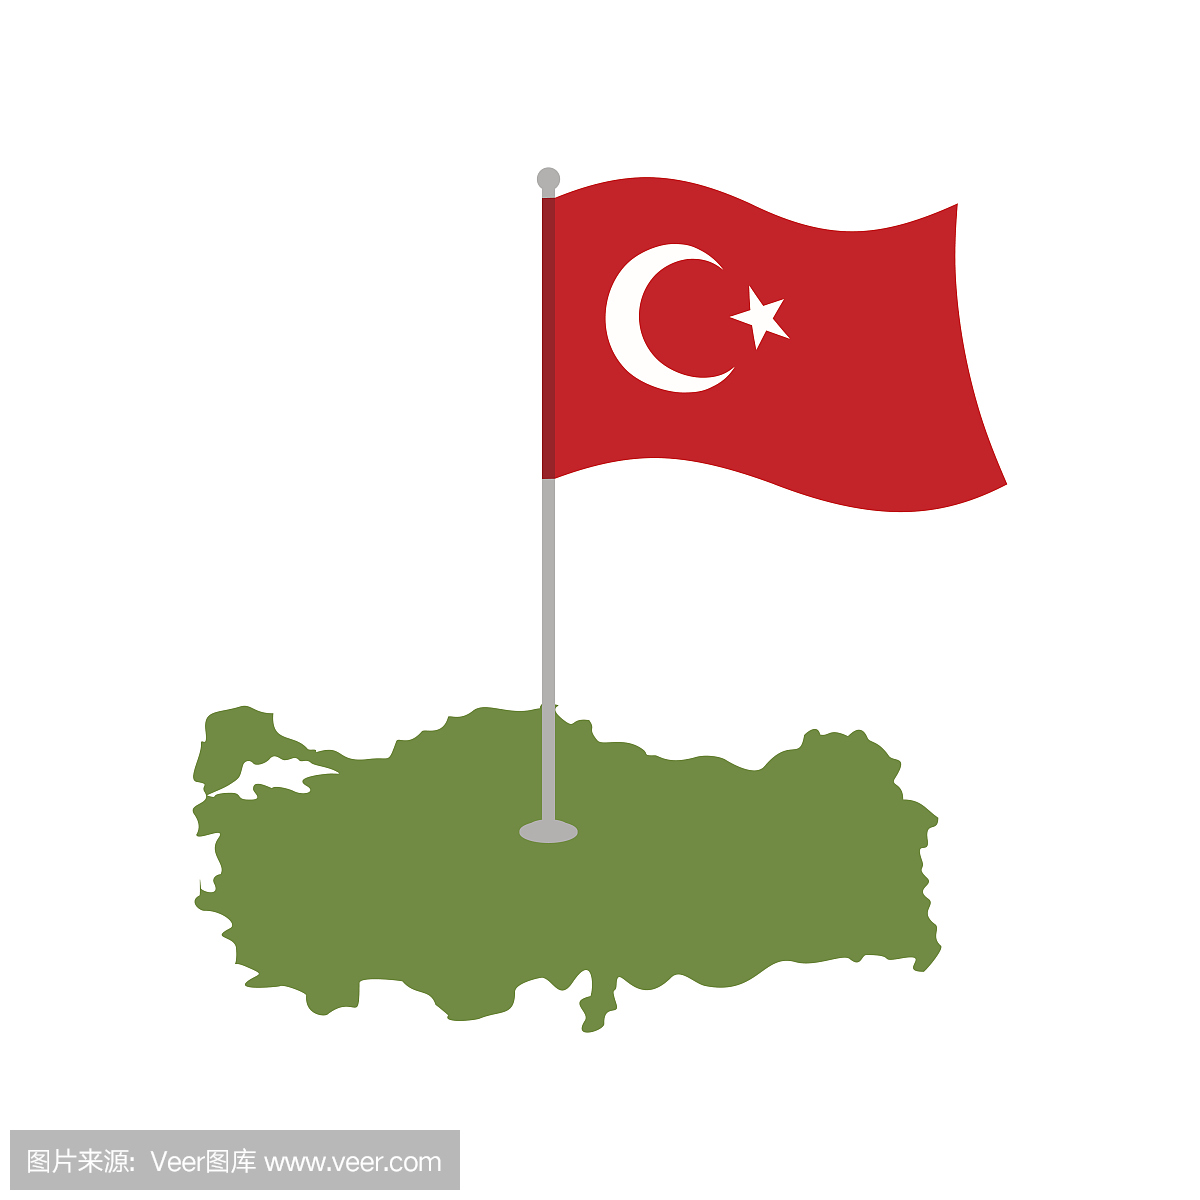 土耳其地图和国旗。土耳其横幅和土地面积。国